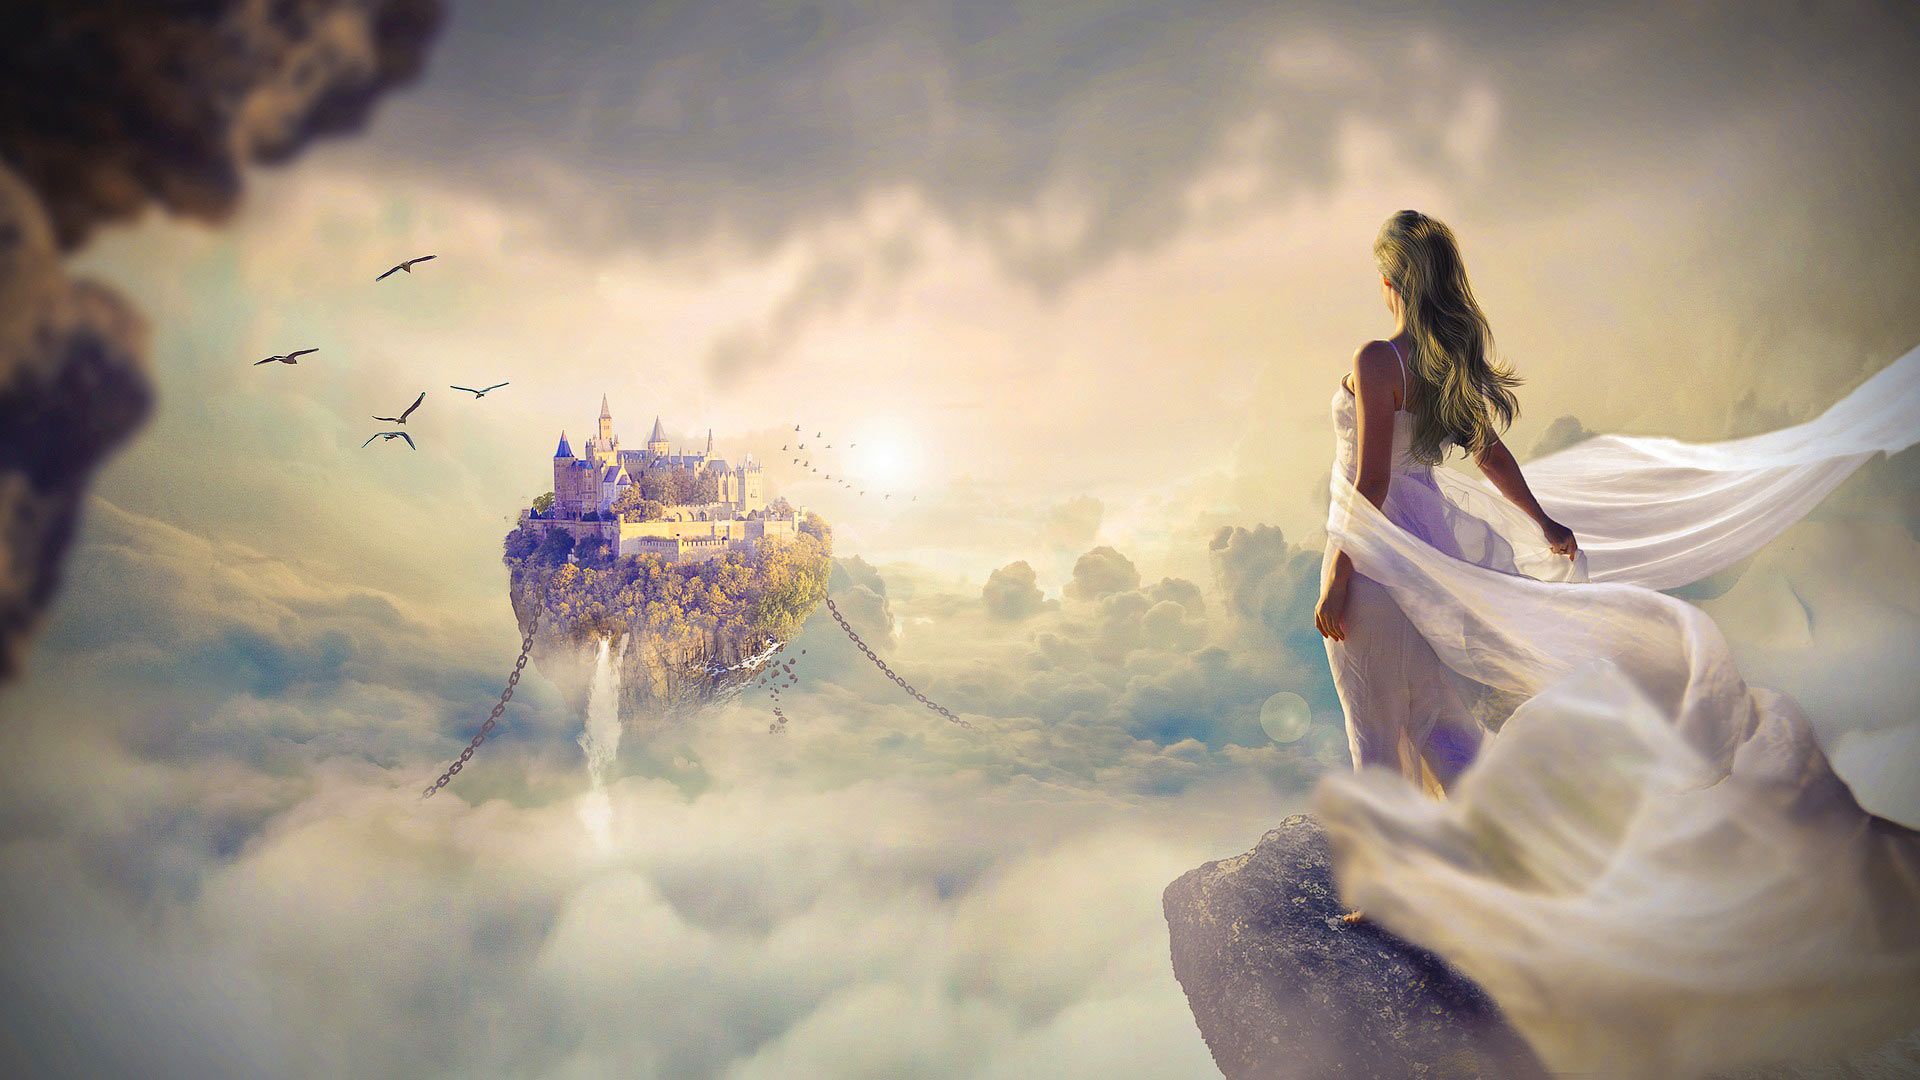 compostion fantastique : une jeune femme regarde au loin un château flottant dans le ciel - Image par peter_pyw de Pixabay